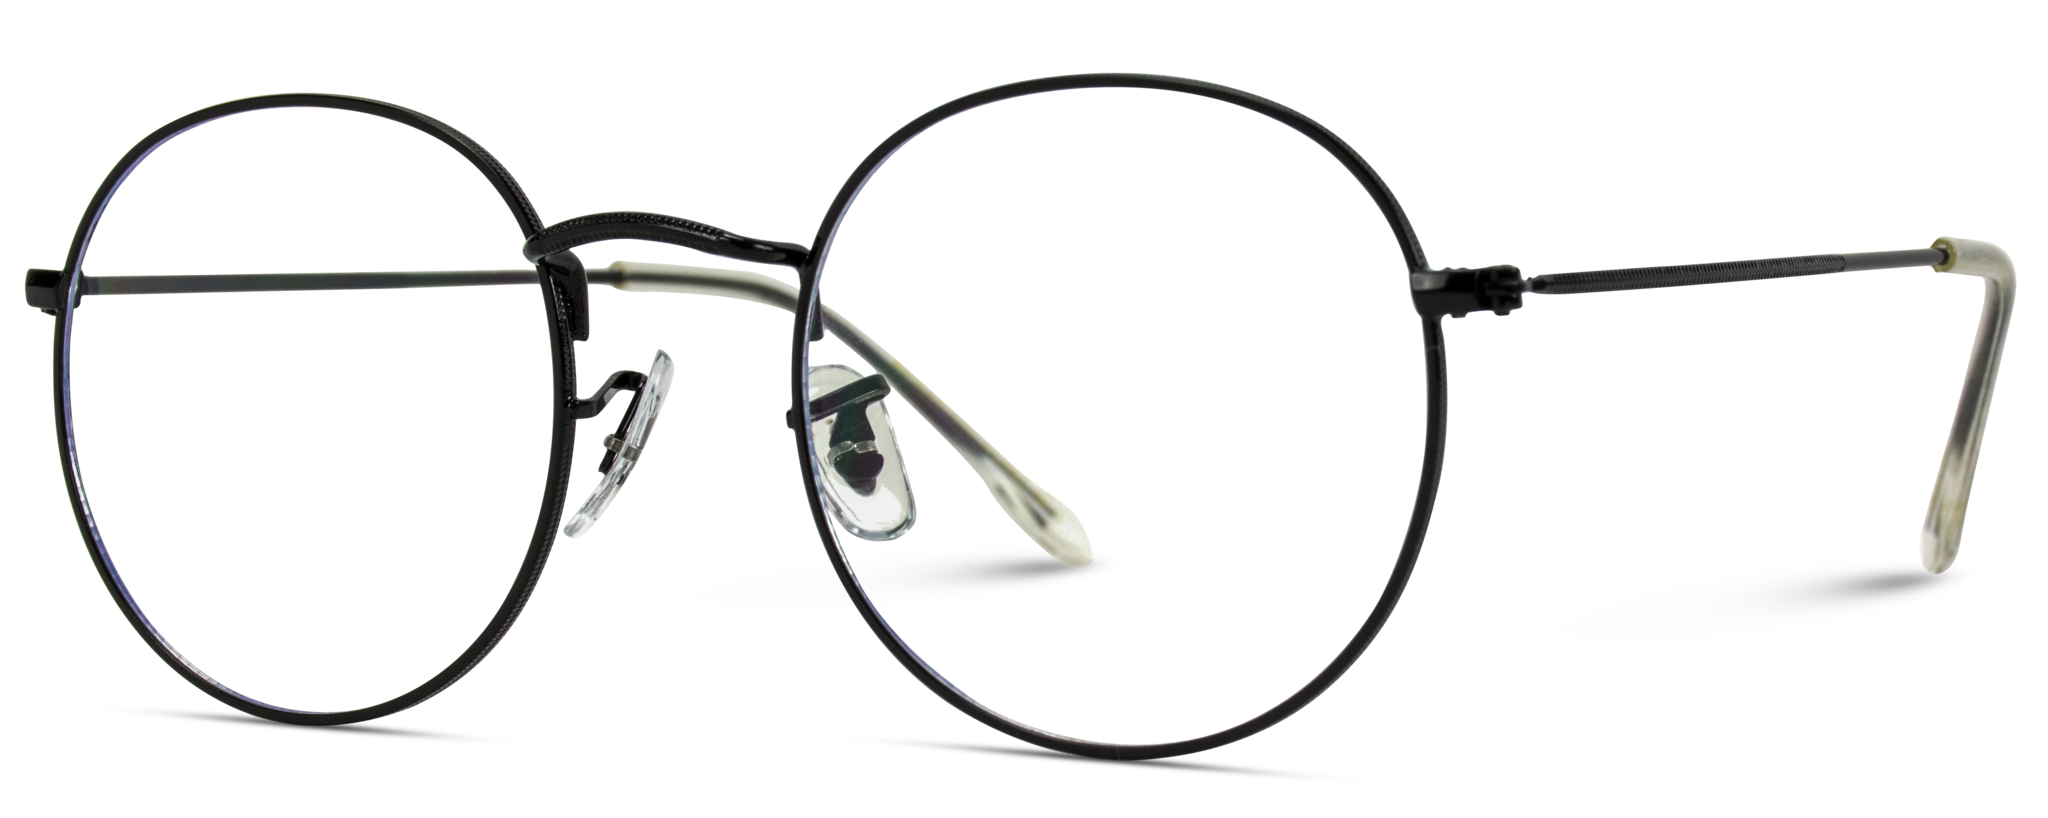 kisspng-sunglasses-wearme-pro-lens-hipster-blaine-round-metal-clear-lens-glasses-retro-glas-5cf5eb86817ba3.5133087815596204865304 copy